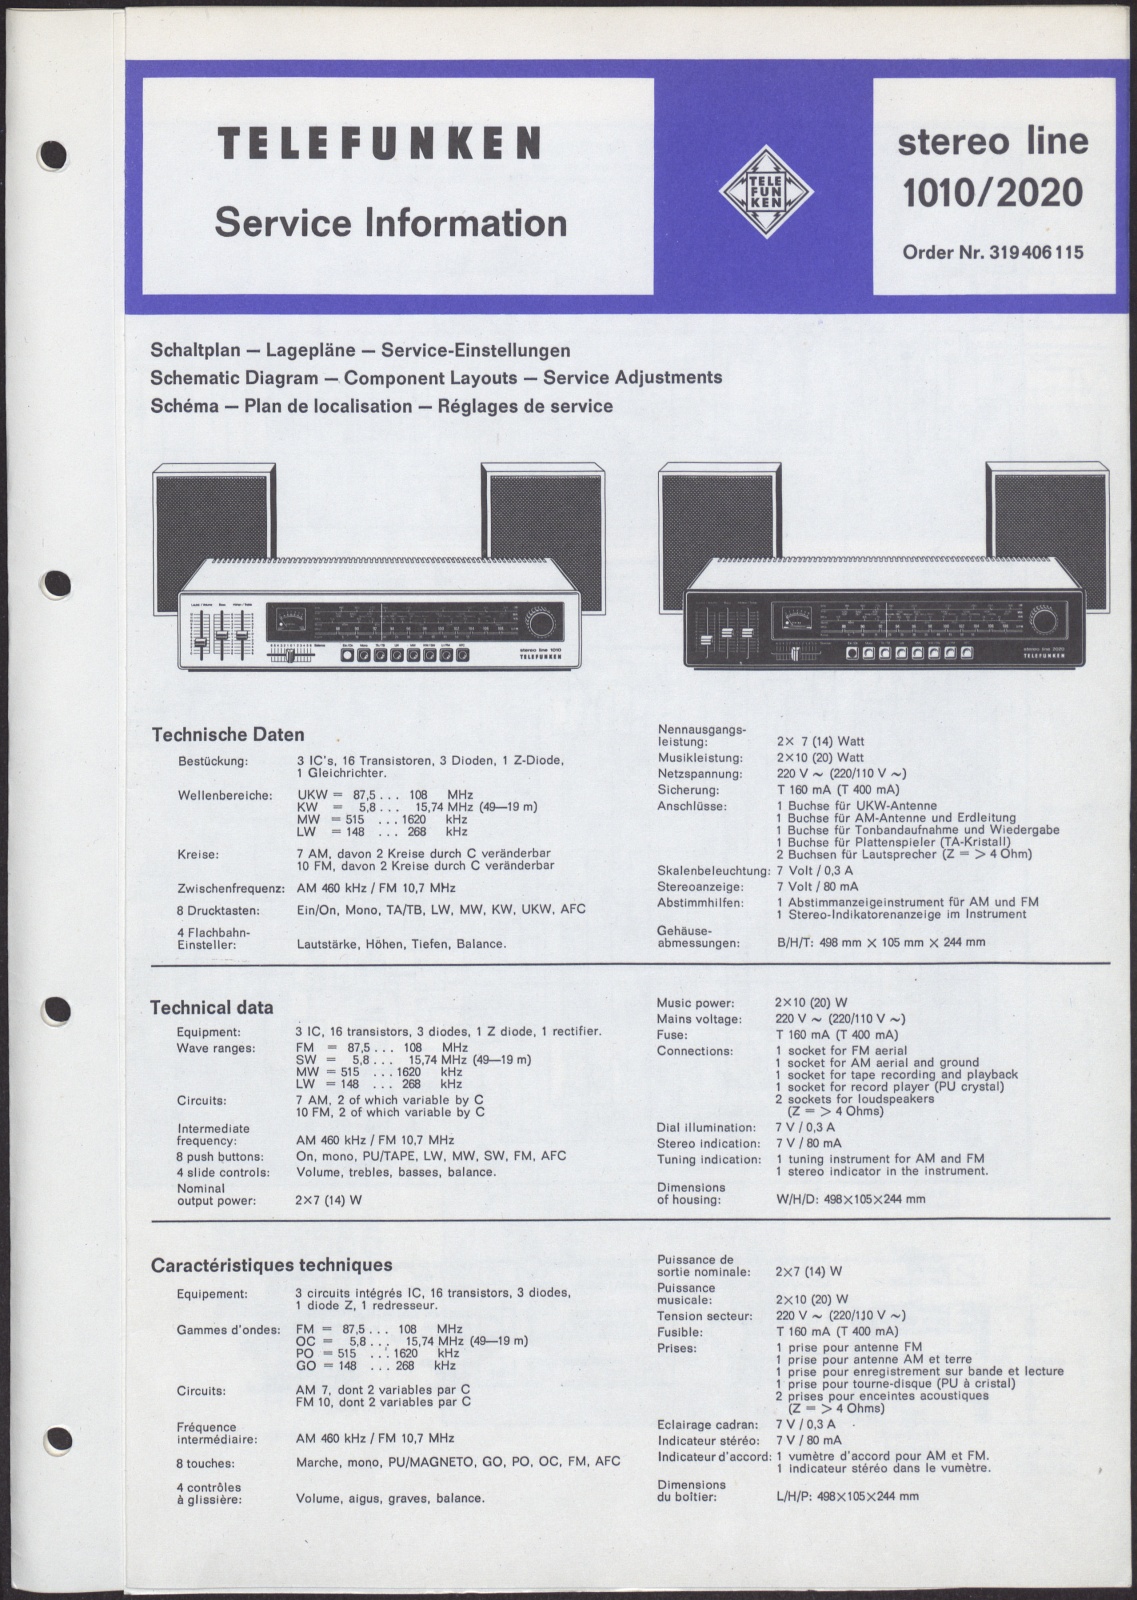 Bedienungsanleitung: Telefunken Service Information stereo line 1010 / 2020 (Stiftung Deutsches Technikmuseum Berlin CC0)